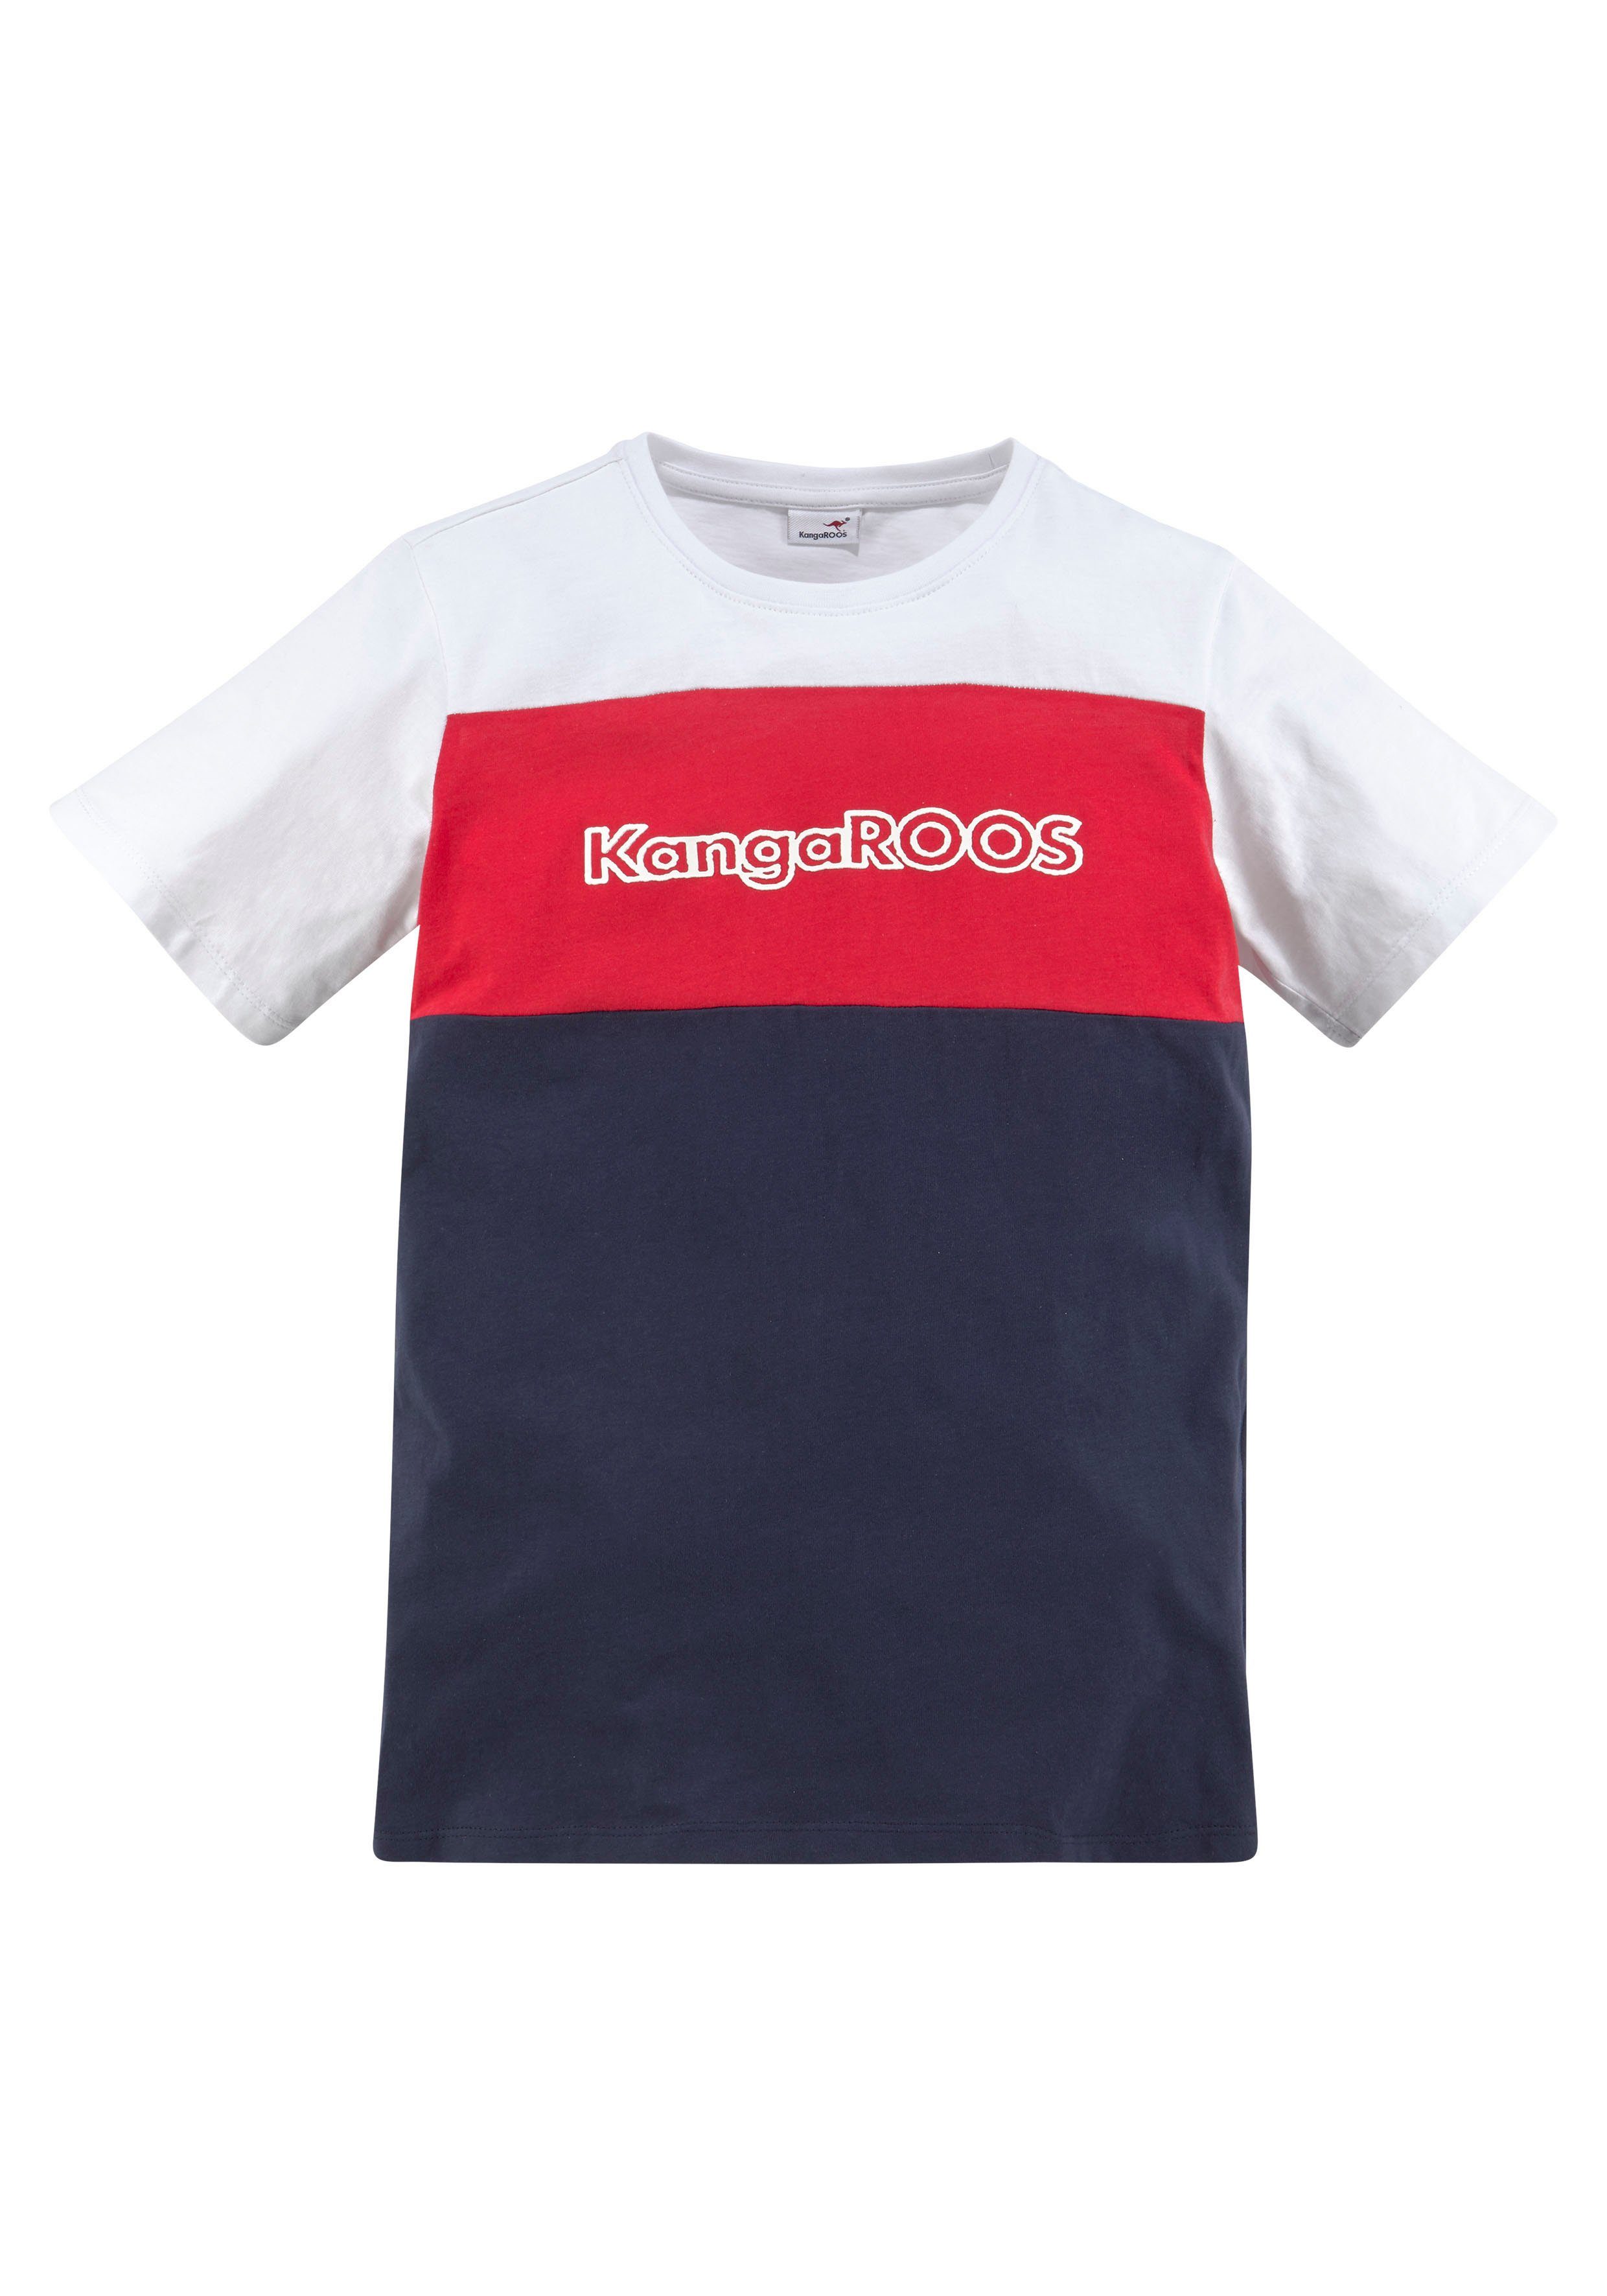 T-Shirt Colorblockdesign in KangaROOS